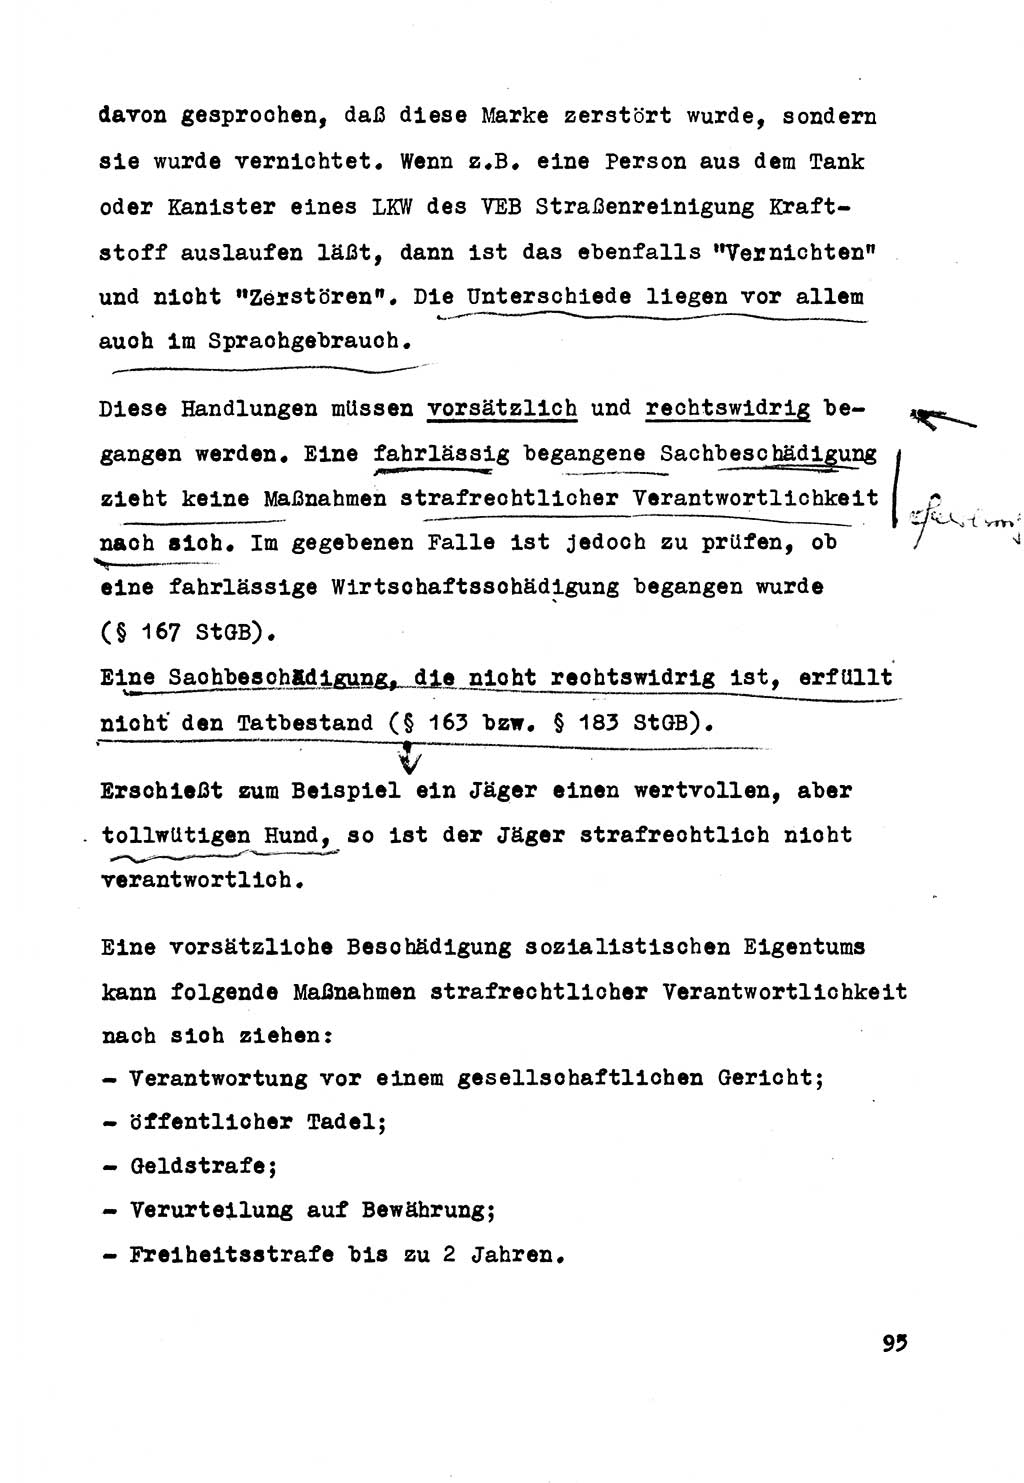 Strafrecht der DDR (Deutsche Demokratische Republik), Besonderer Teil, Lehrmaterial, Heft 5 1970, Seite 95 (Strafr. DDR BT Lehrmat. H. 5 1970, S. 95)